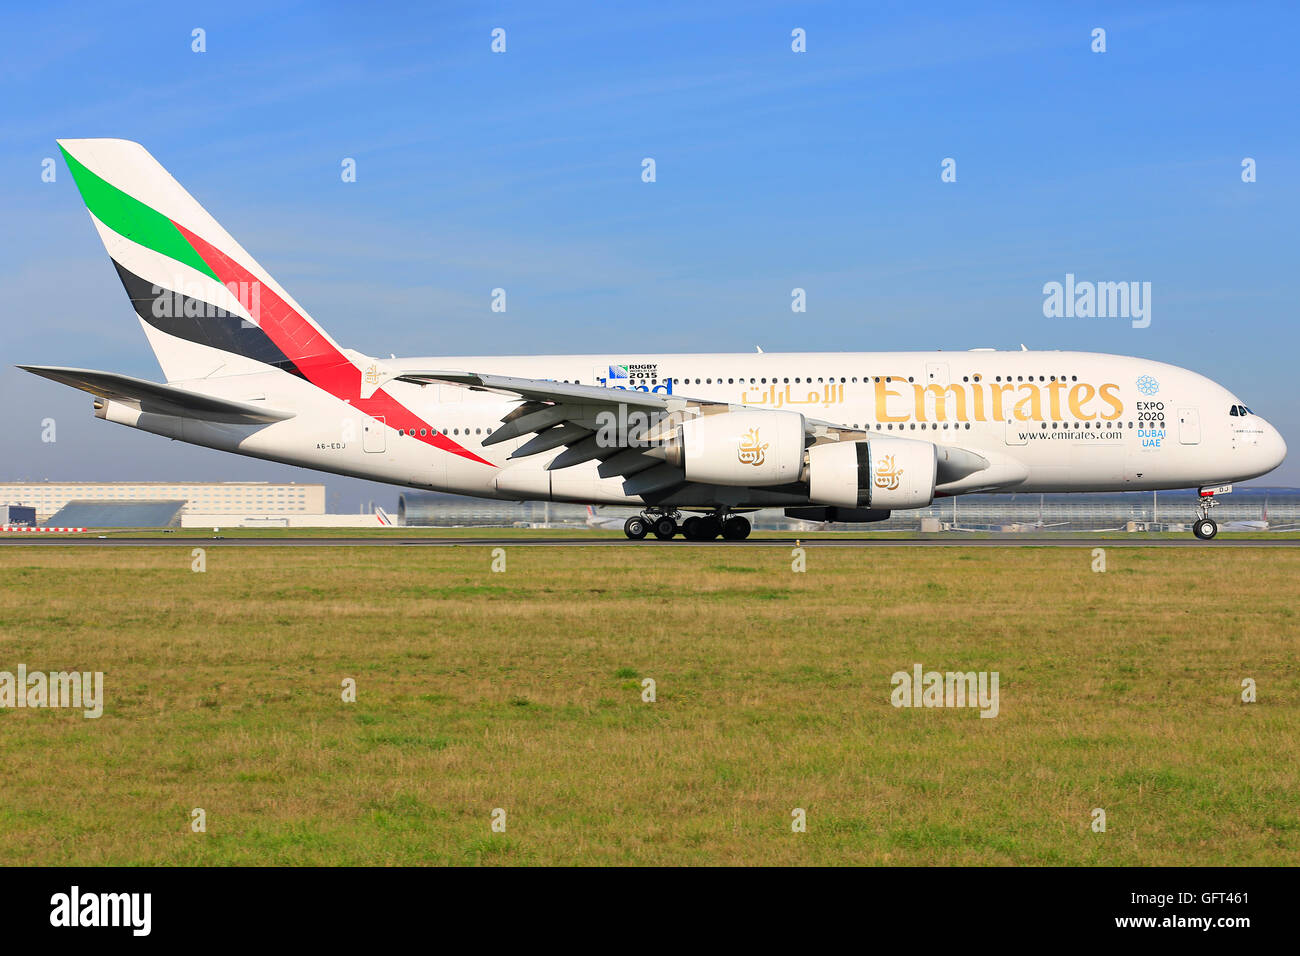 Paris/Frankreich Oktober 9, 2015: Airbus A380 von Emirates Airways landet auf dem Flughafen in Paris. Stockfoto